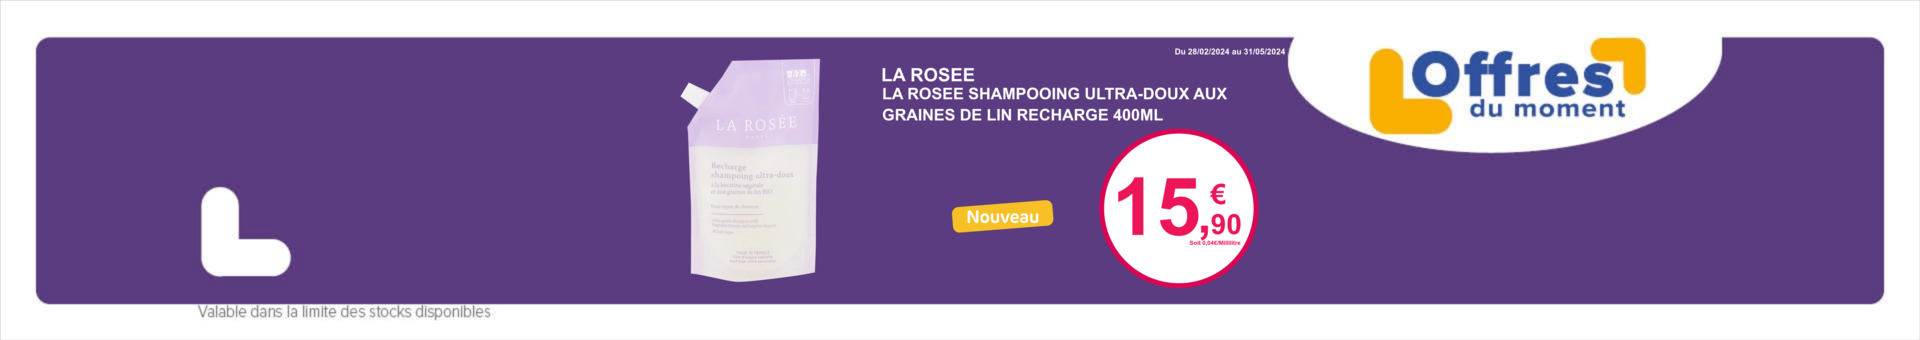 LA ROSEE SHAMPOOING ULTRA-DOUX AUX GRAINES DE LIN RECHARGE 400ML